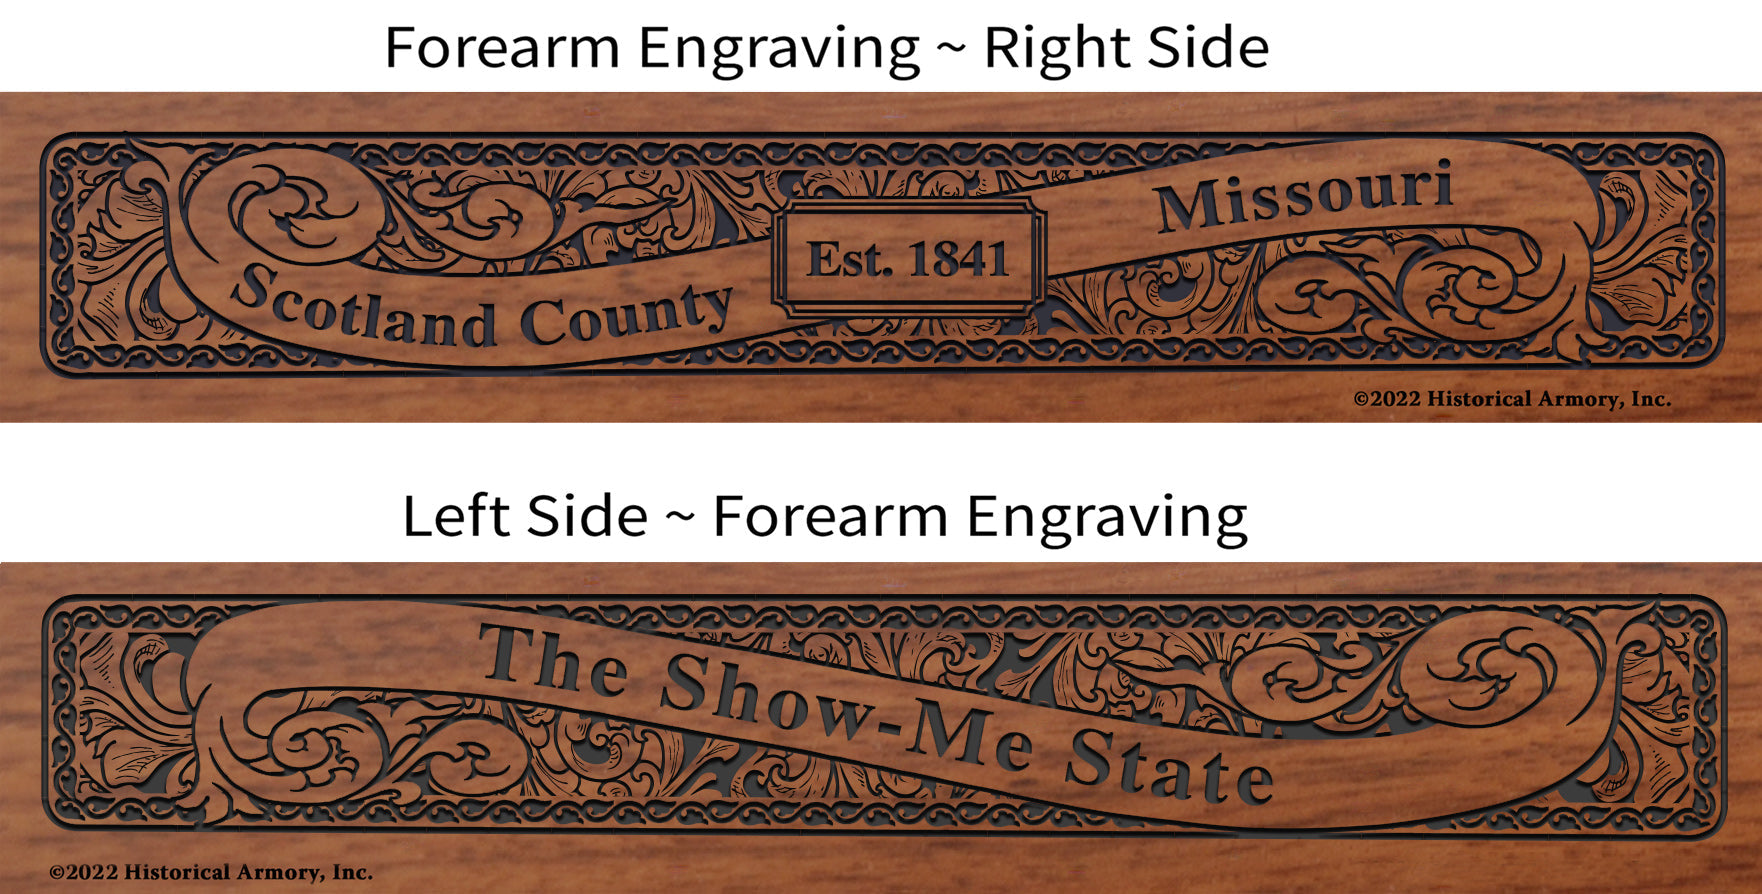 Scotland County Missouri Engraved Rifle Forearm